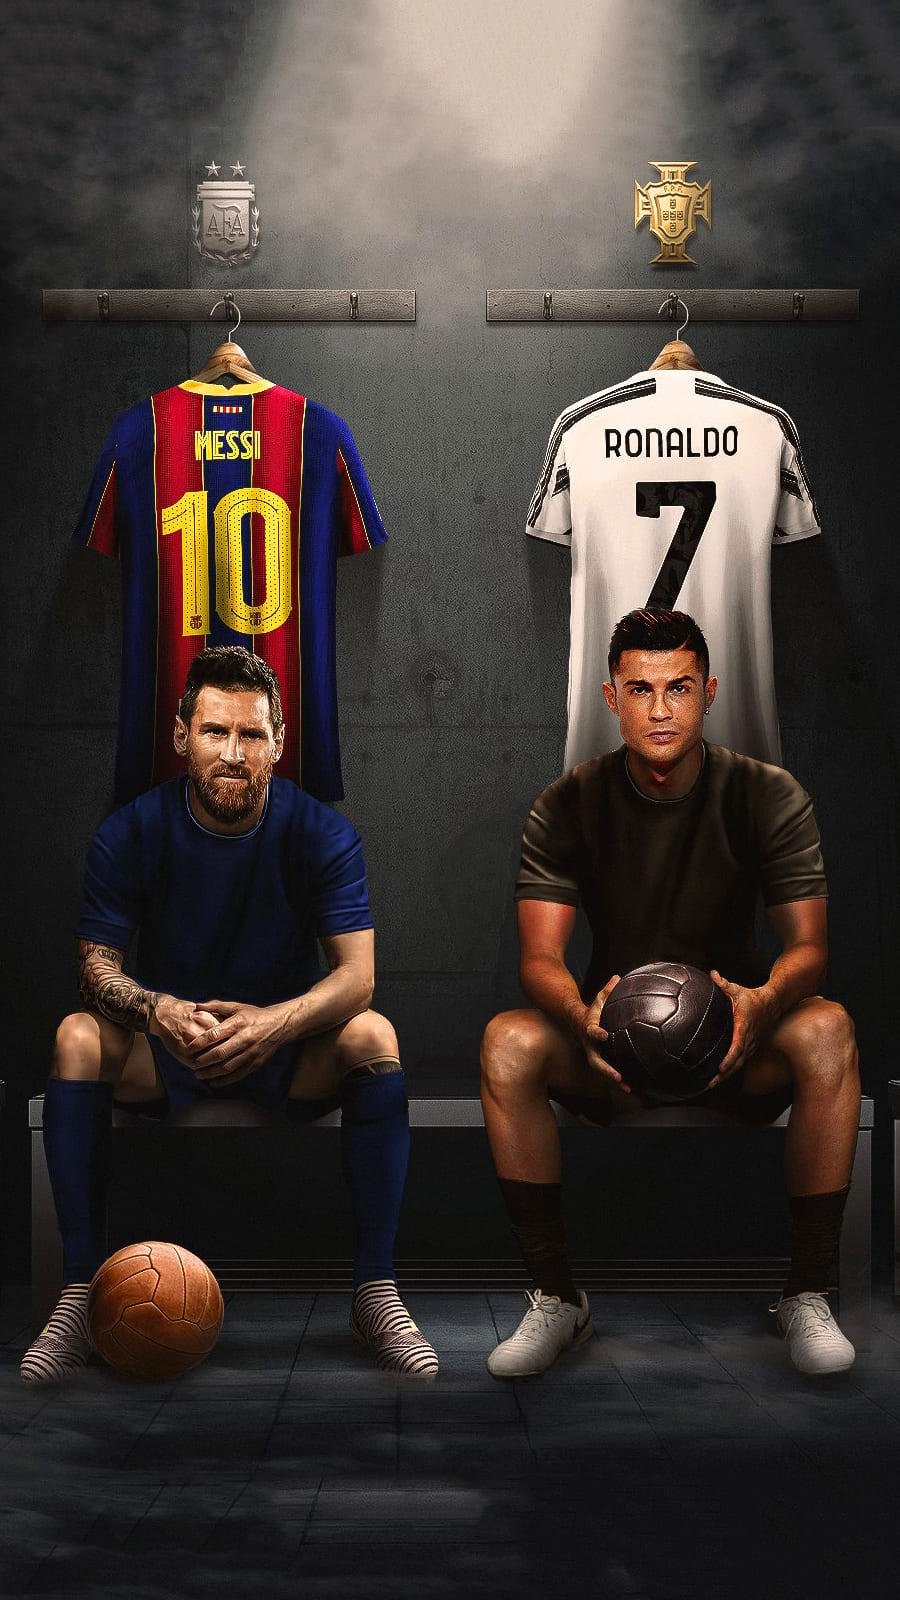 Hình nền Messi và Ronaldo là điều gì đó không thể bỏ qua đối với những fan của bóng đá. Cả hai cầu thủ này đều là những ngôi sao sáng giá với rất nhiều kỷ lục và thành tích đáng nể. Hãy cùng nhau thưởng thức hình nền đầy cảm hứng và năng lượng này!